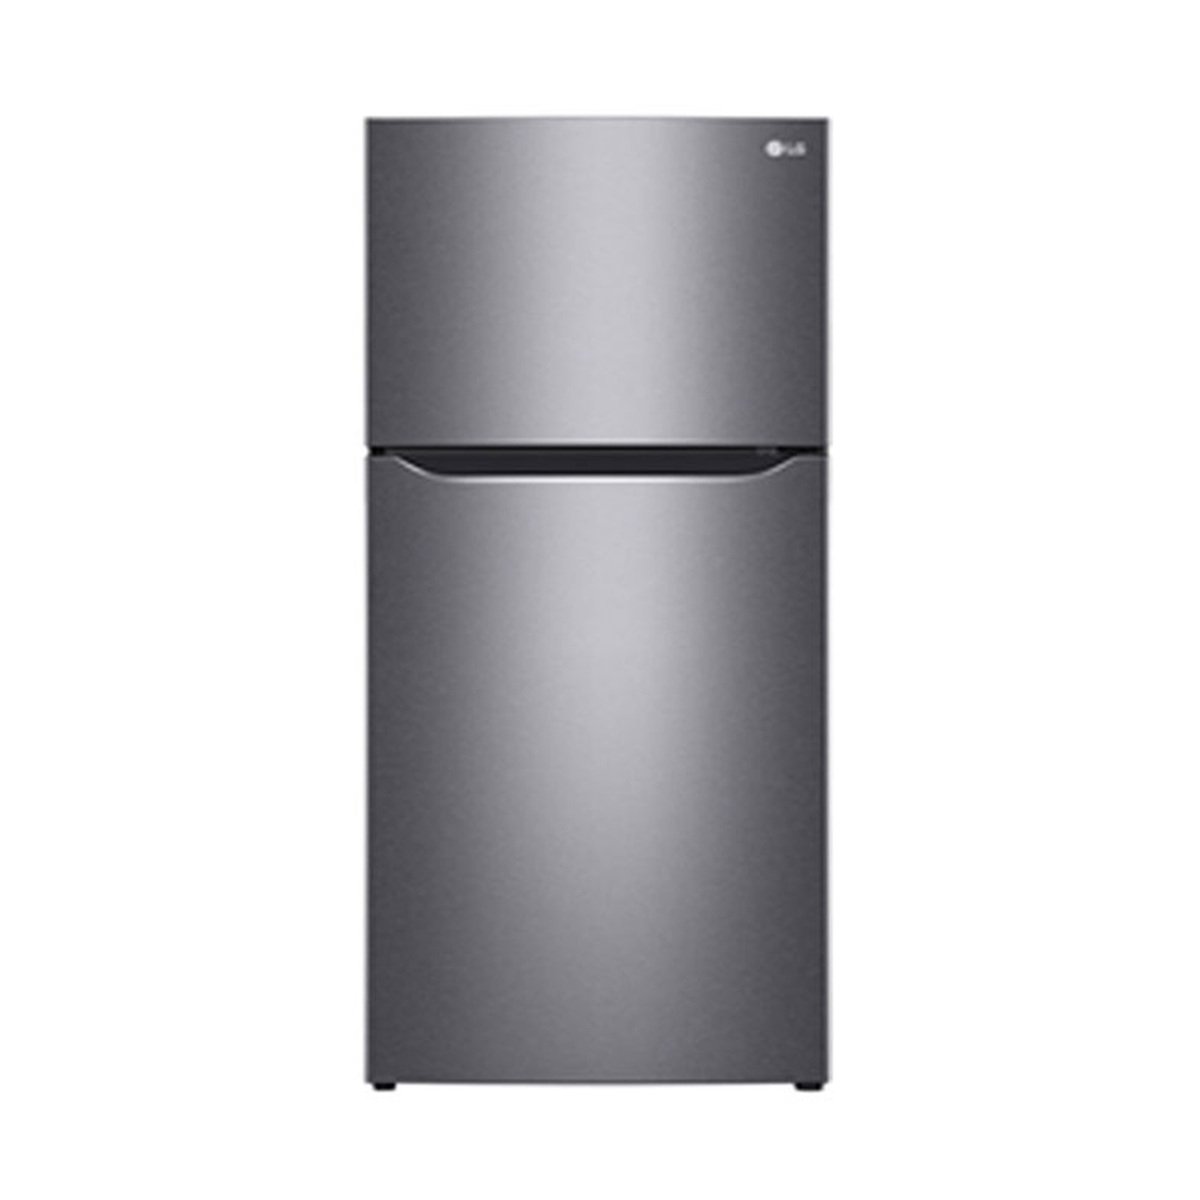 LG Double Door Refrigerator LT15GBBDIN 394LTR